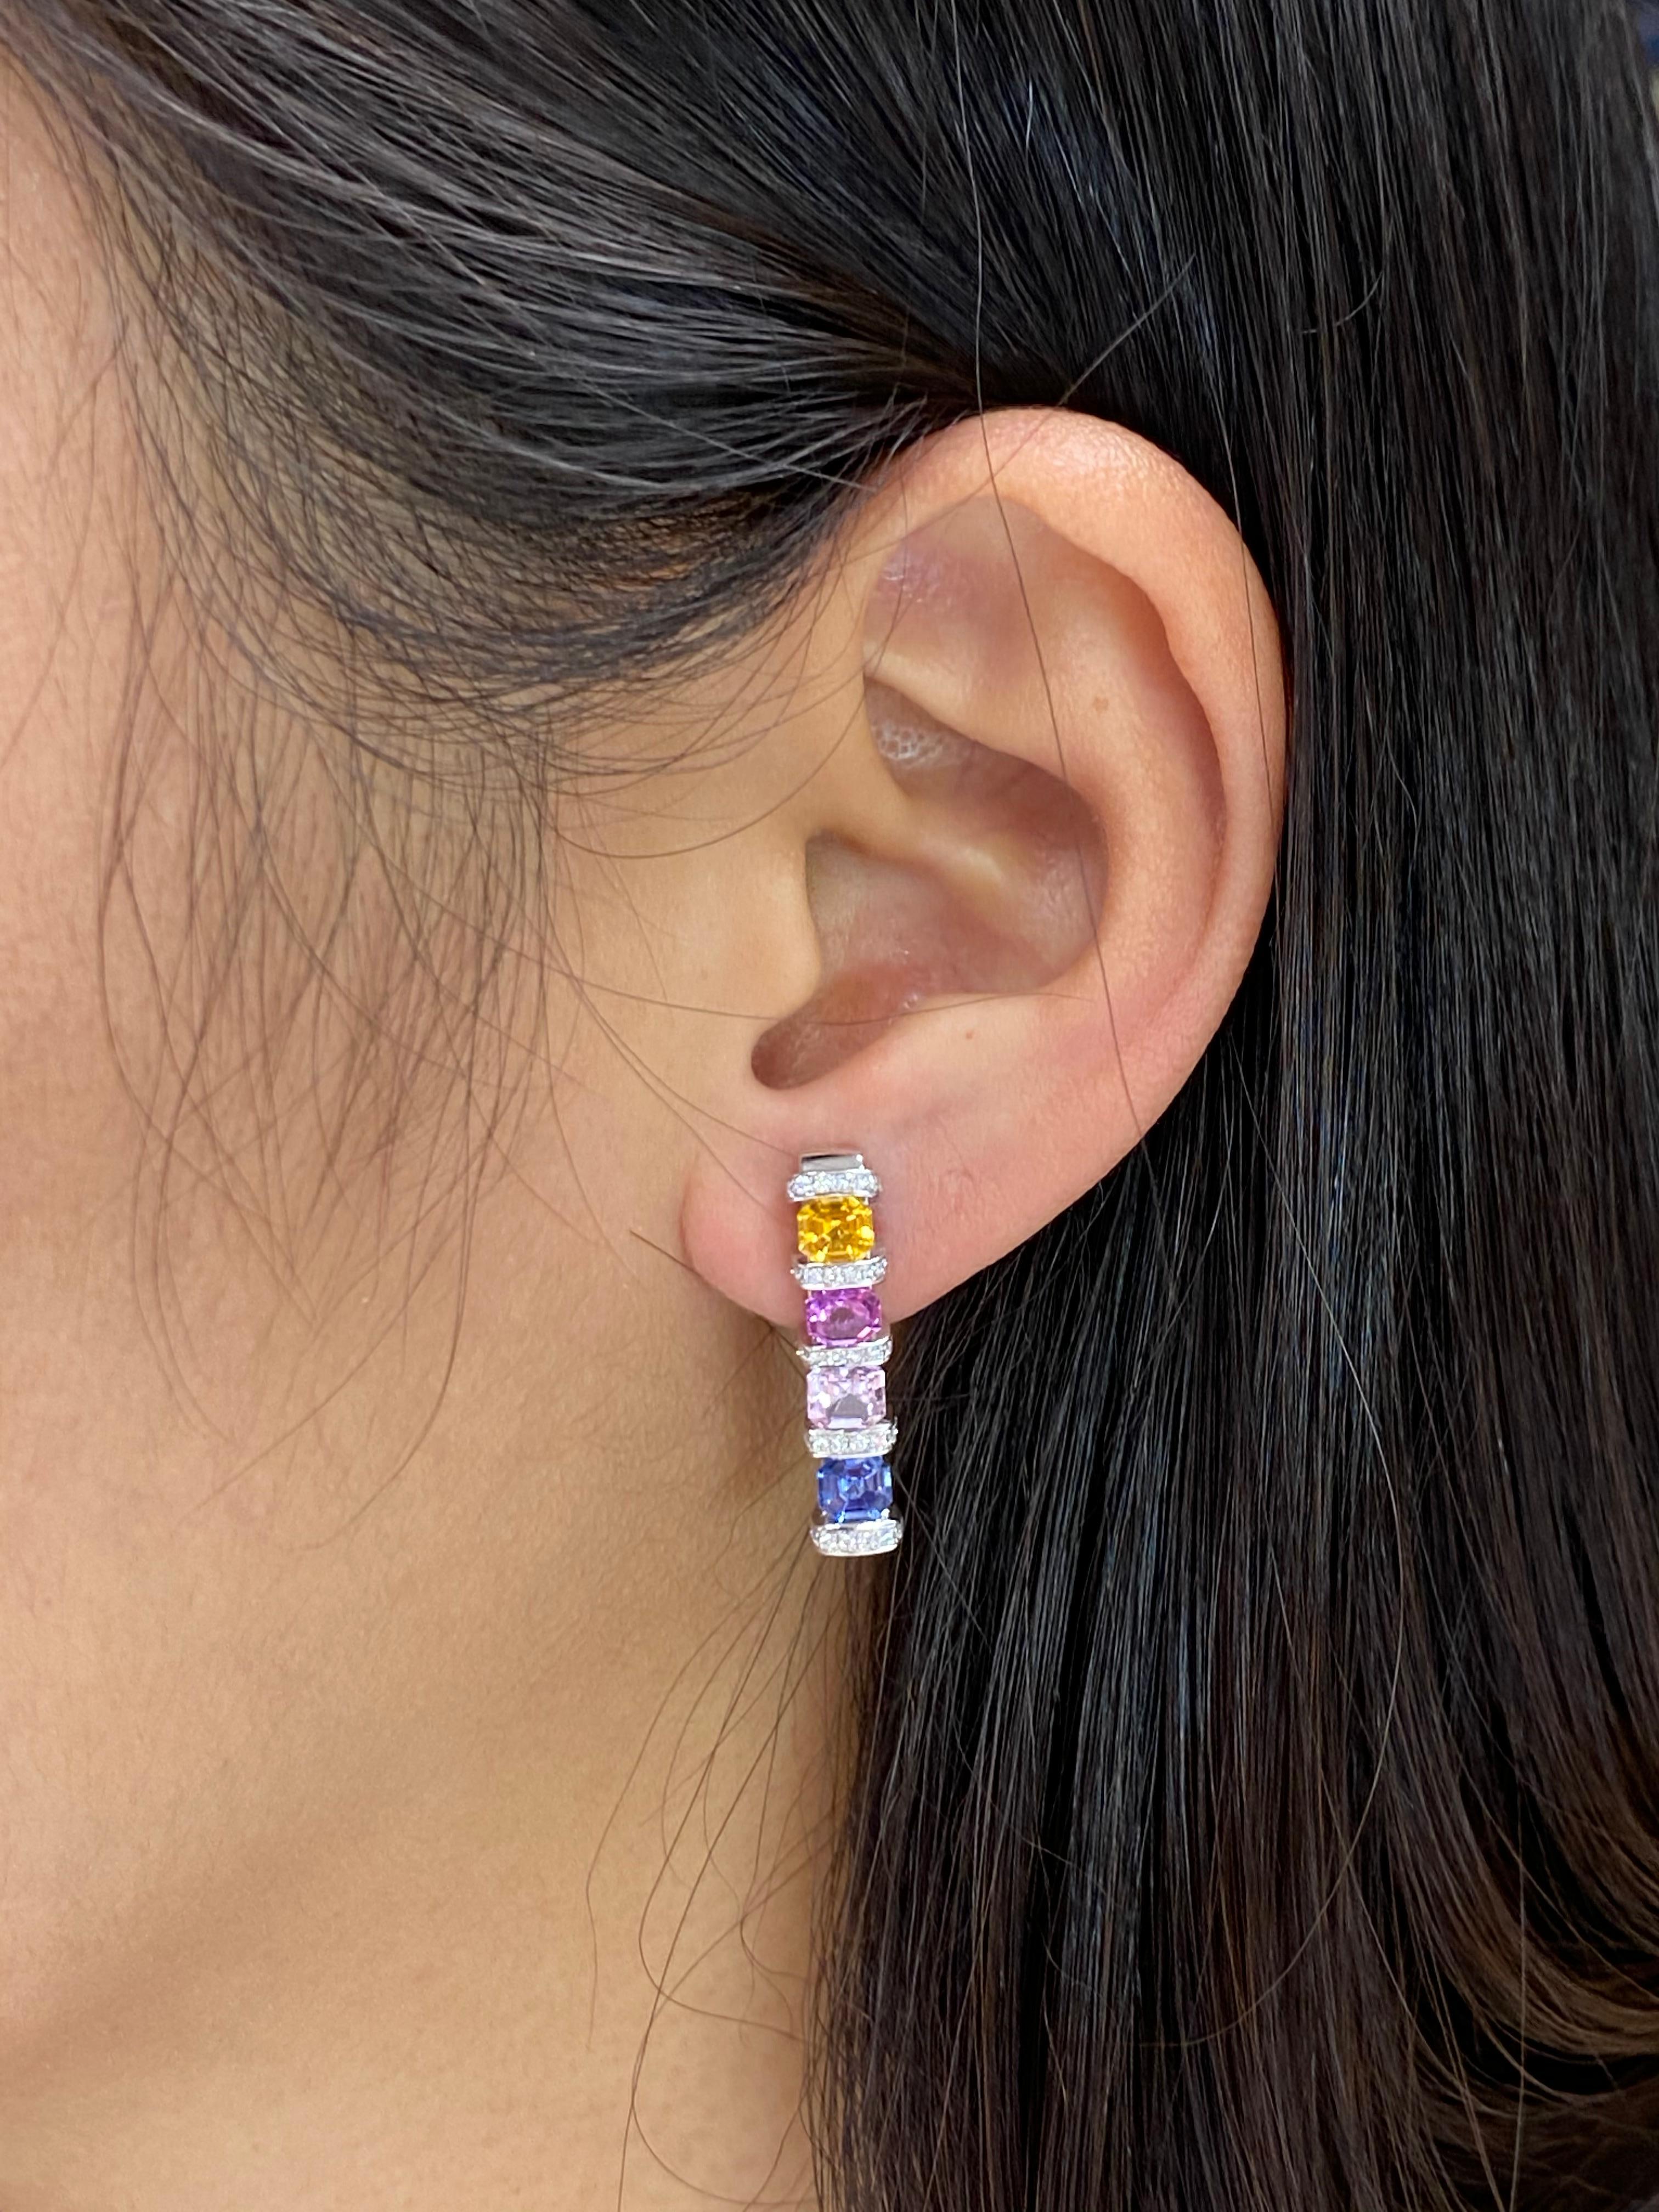 Die Farbe dieser Ohrringe ist einfach unglaublich! Hier ist ein ganz besonderes Paar Ohrringe mit sehr lebendigen Farben. Das Design ist einfach, aber dennoch auffallend. Viel Feuer und viel Leben! Die Ohrringe sind in 18 Karat Weißgold gefasst. Die